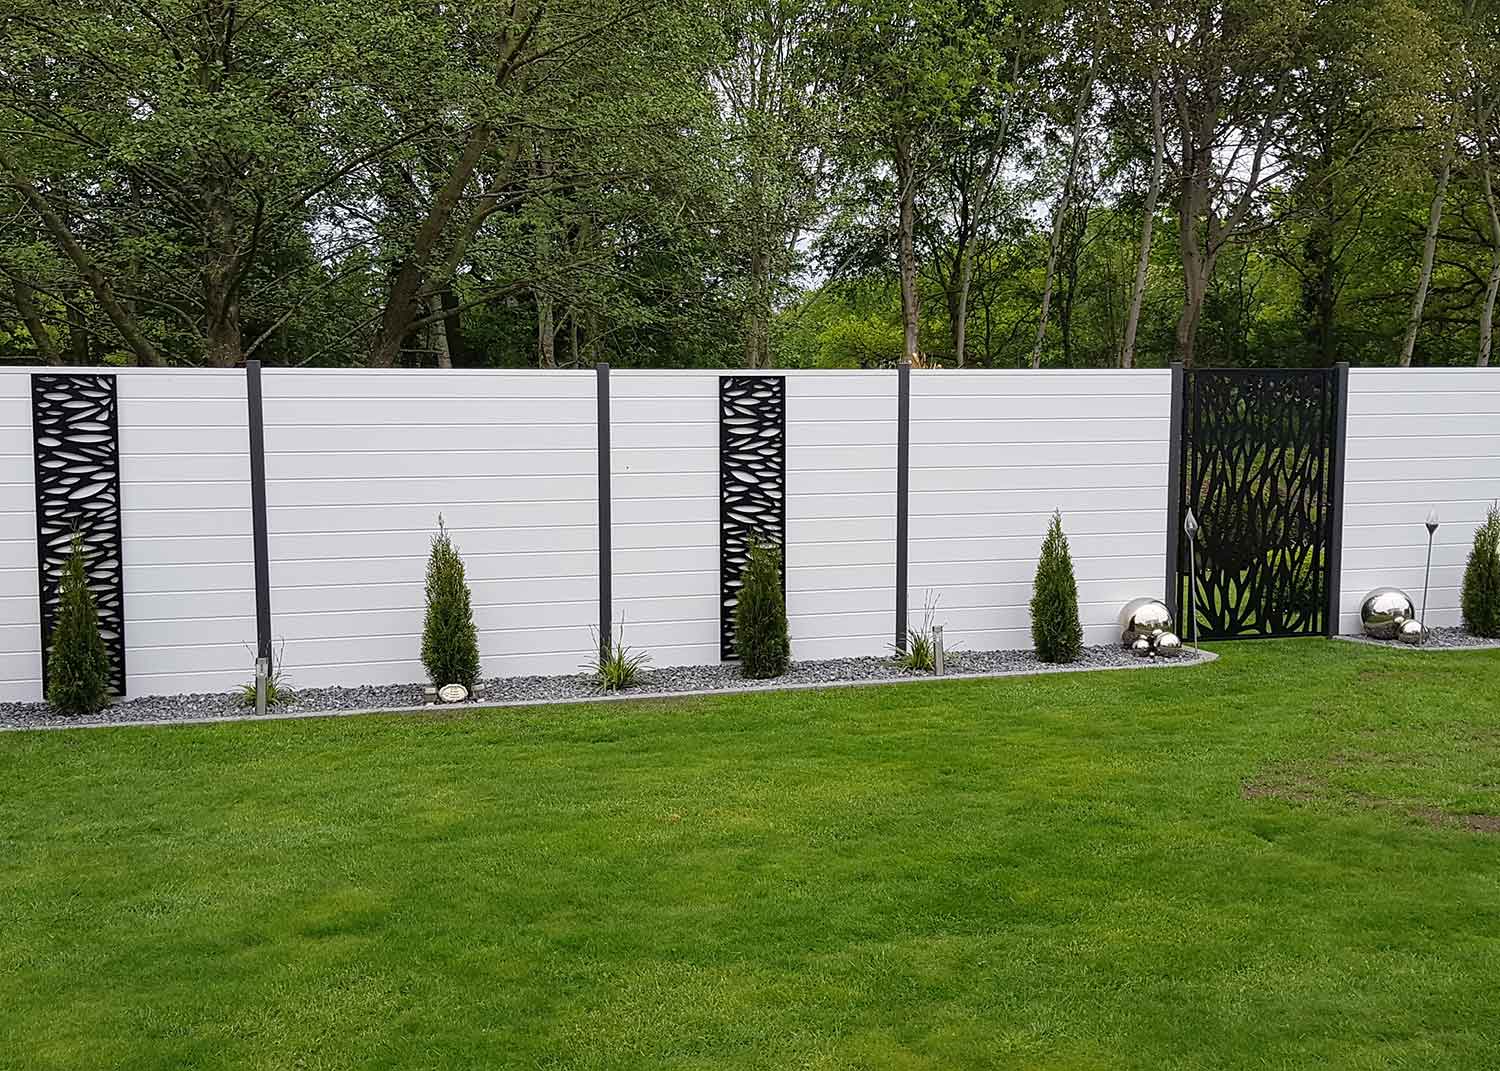 Sichtschutzwand  in Weiß im Garten mit künstlerischen Akzenten davor